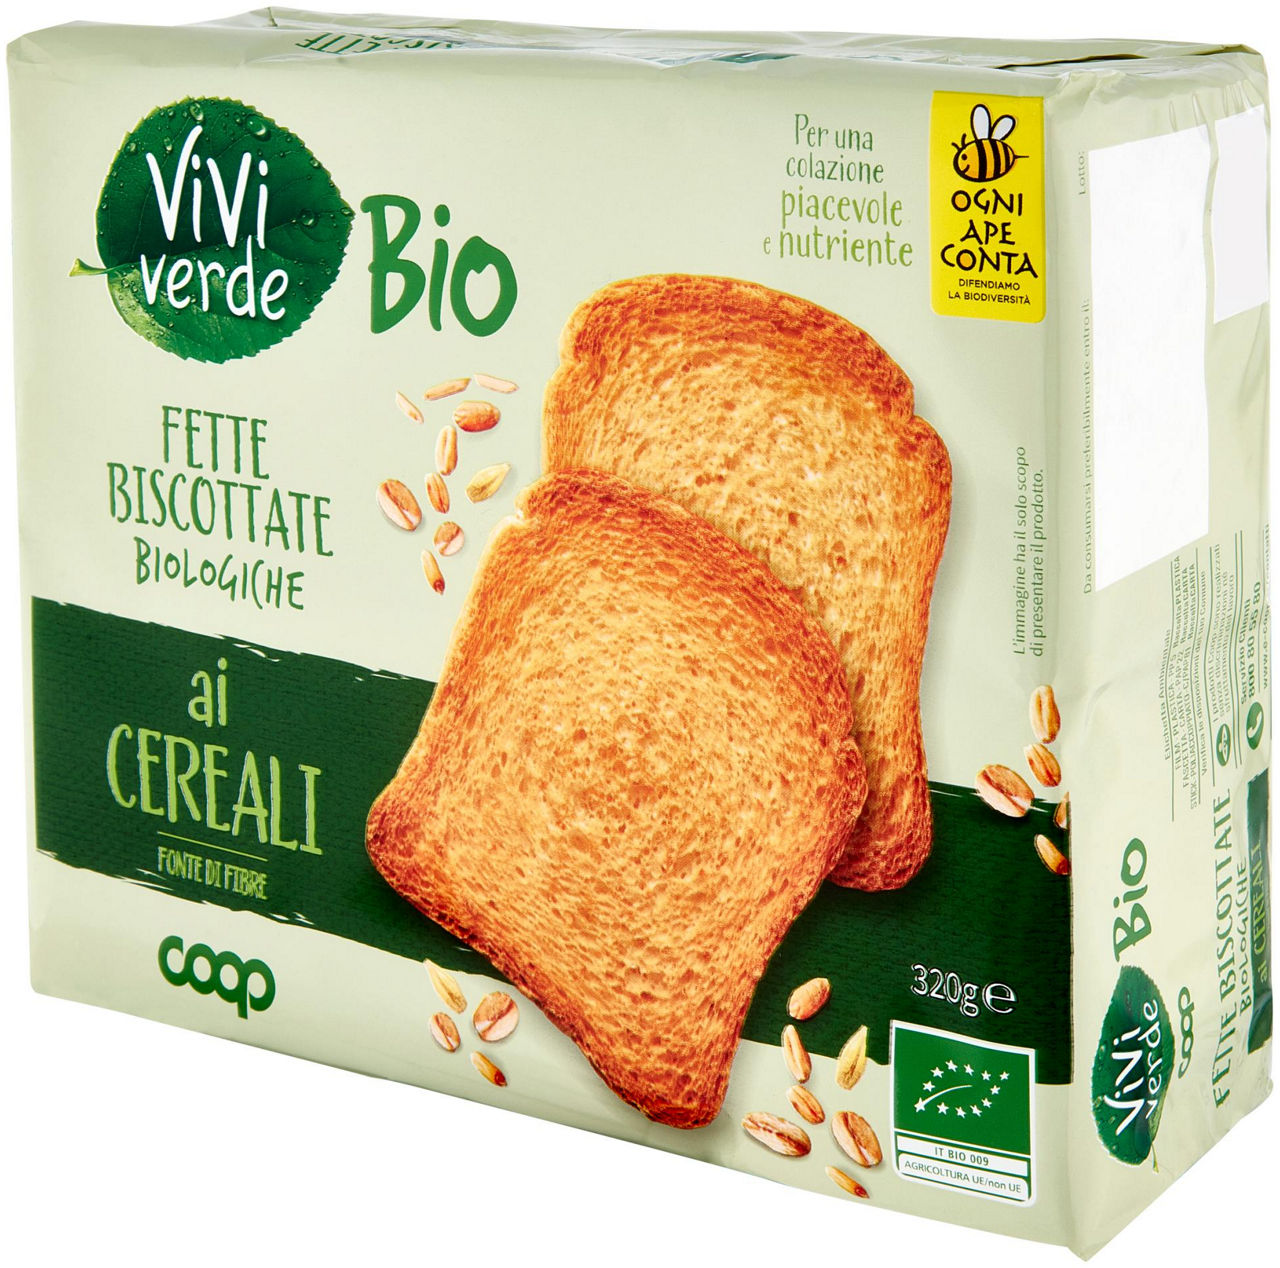 fette biscottate ai Cereali Biologiche Vivi Verde 320 g - 6